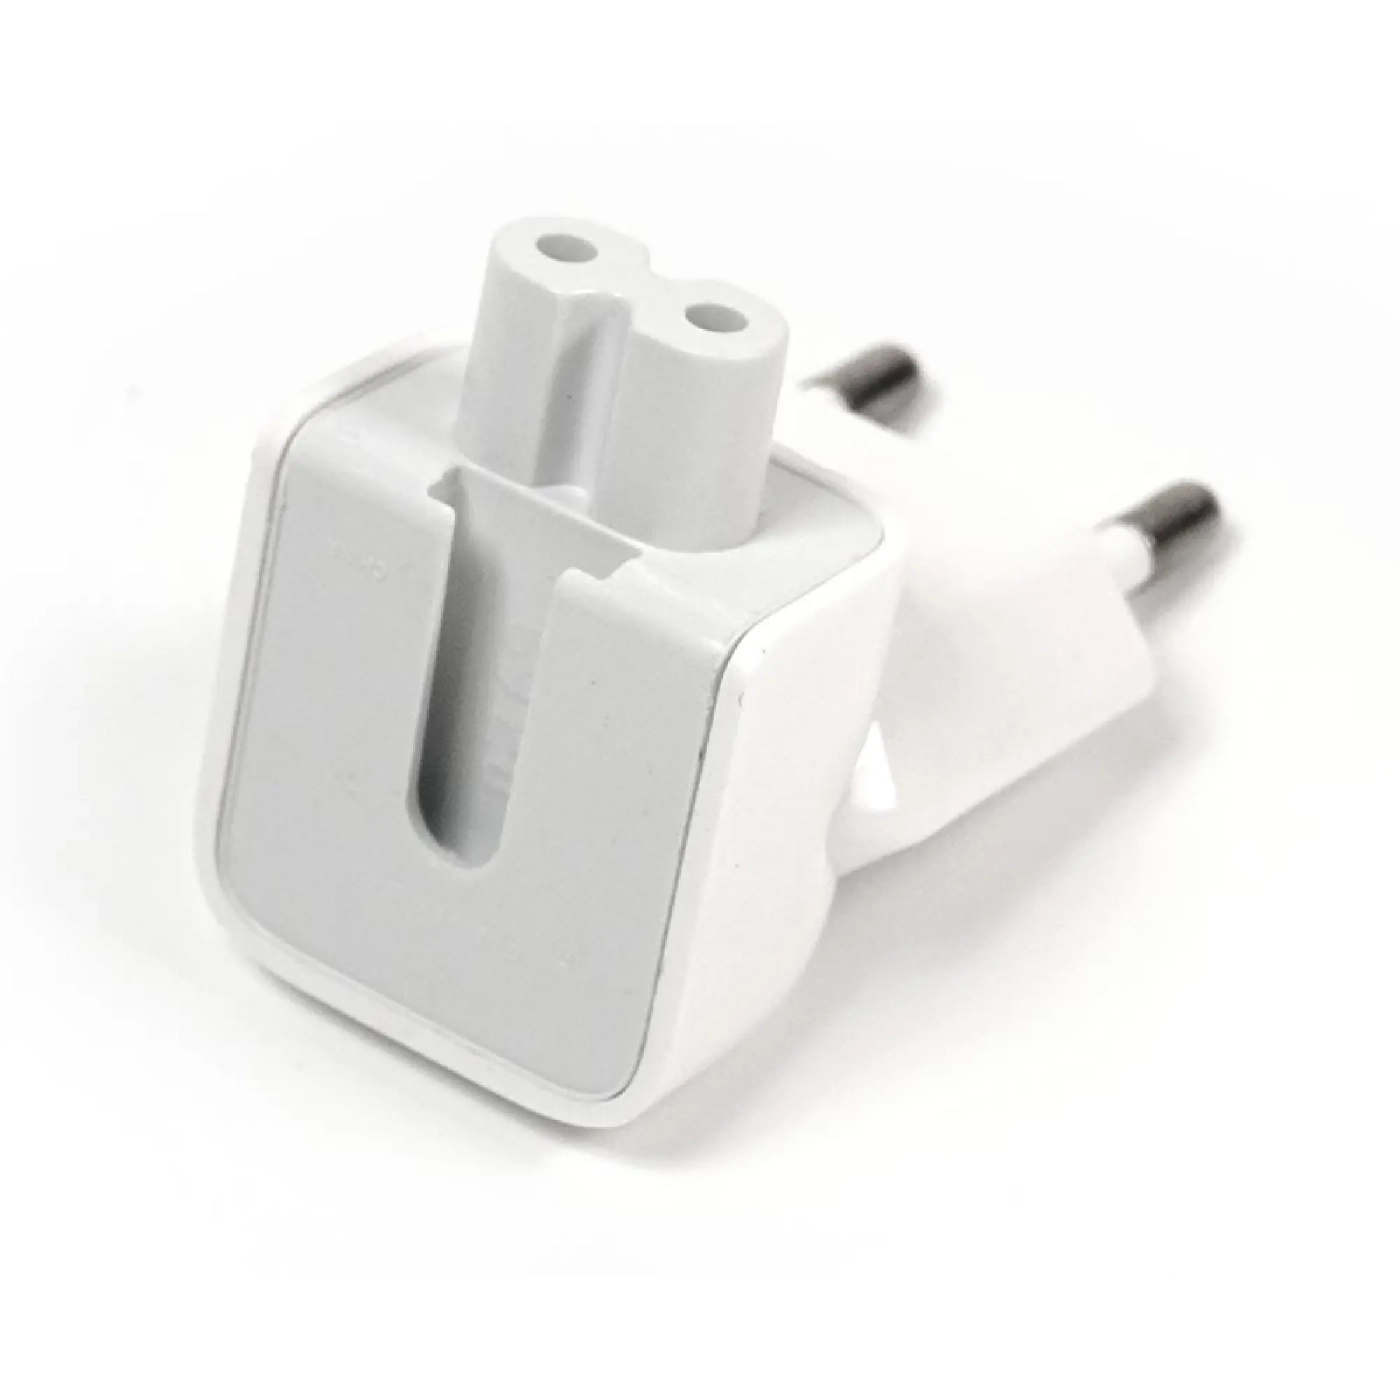 Купить Переходник PowerPlant для зарядного устройства Apple iPad евровилка (GM-PMPPAP) - фото 3